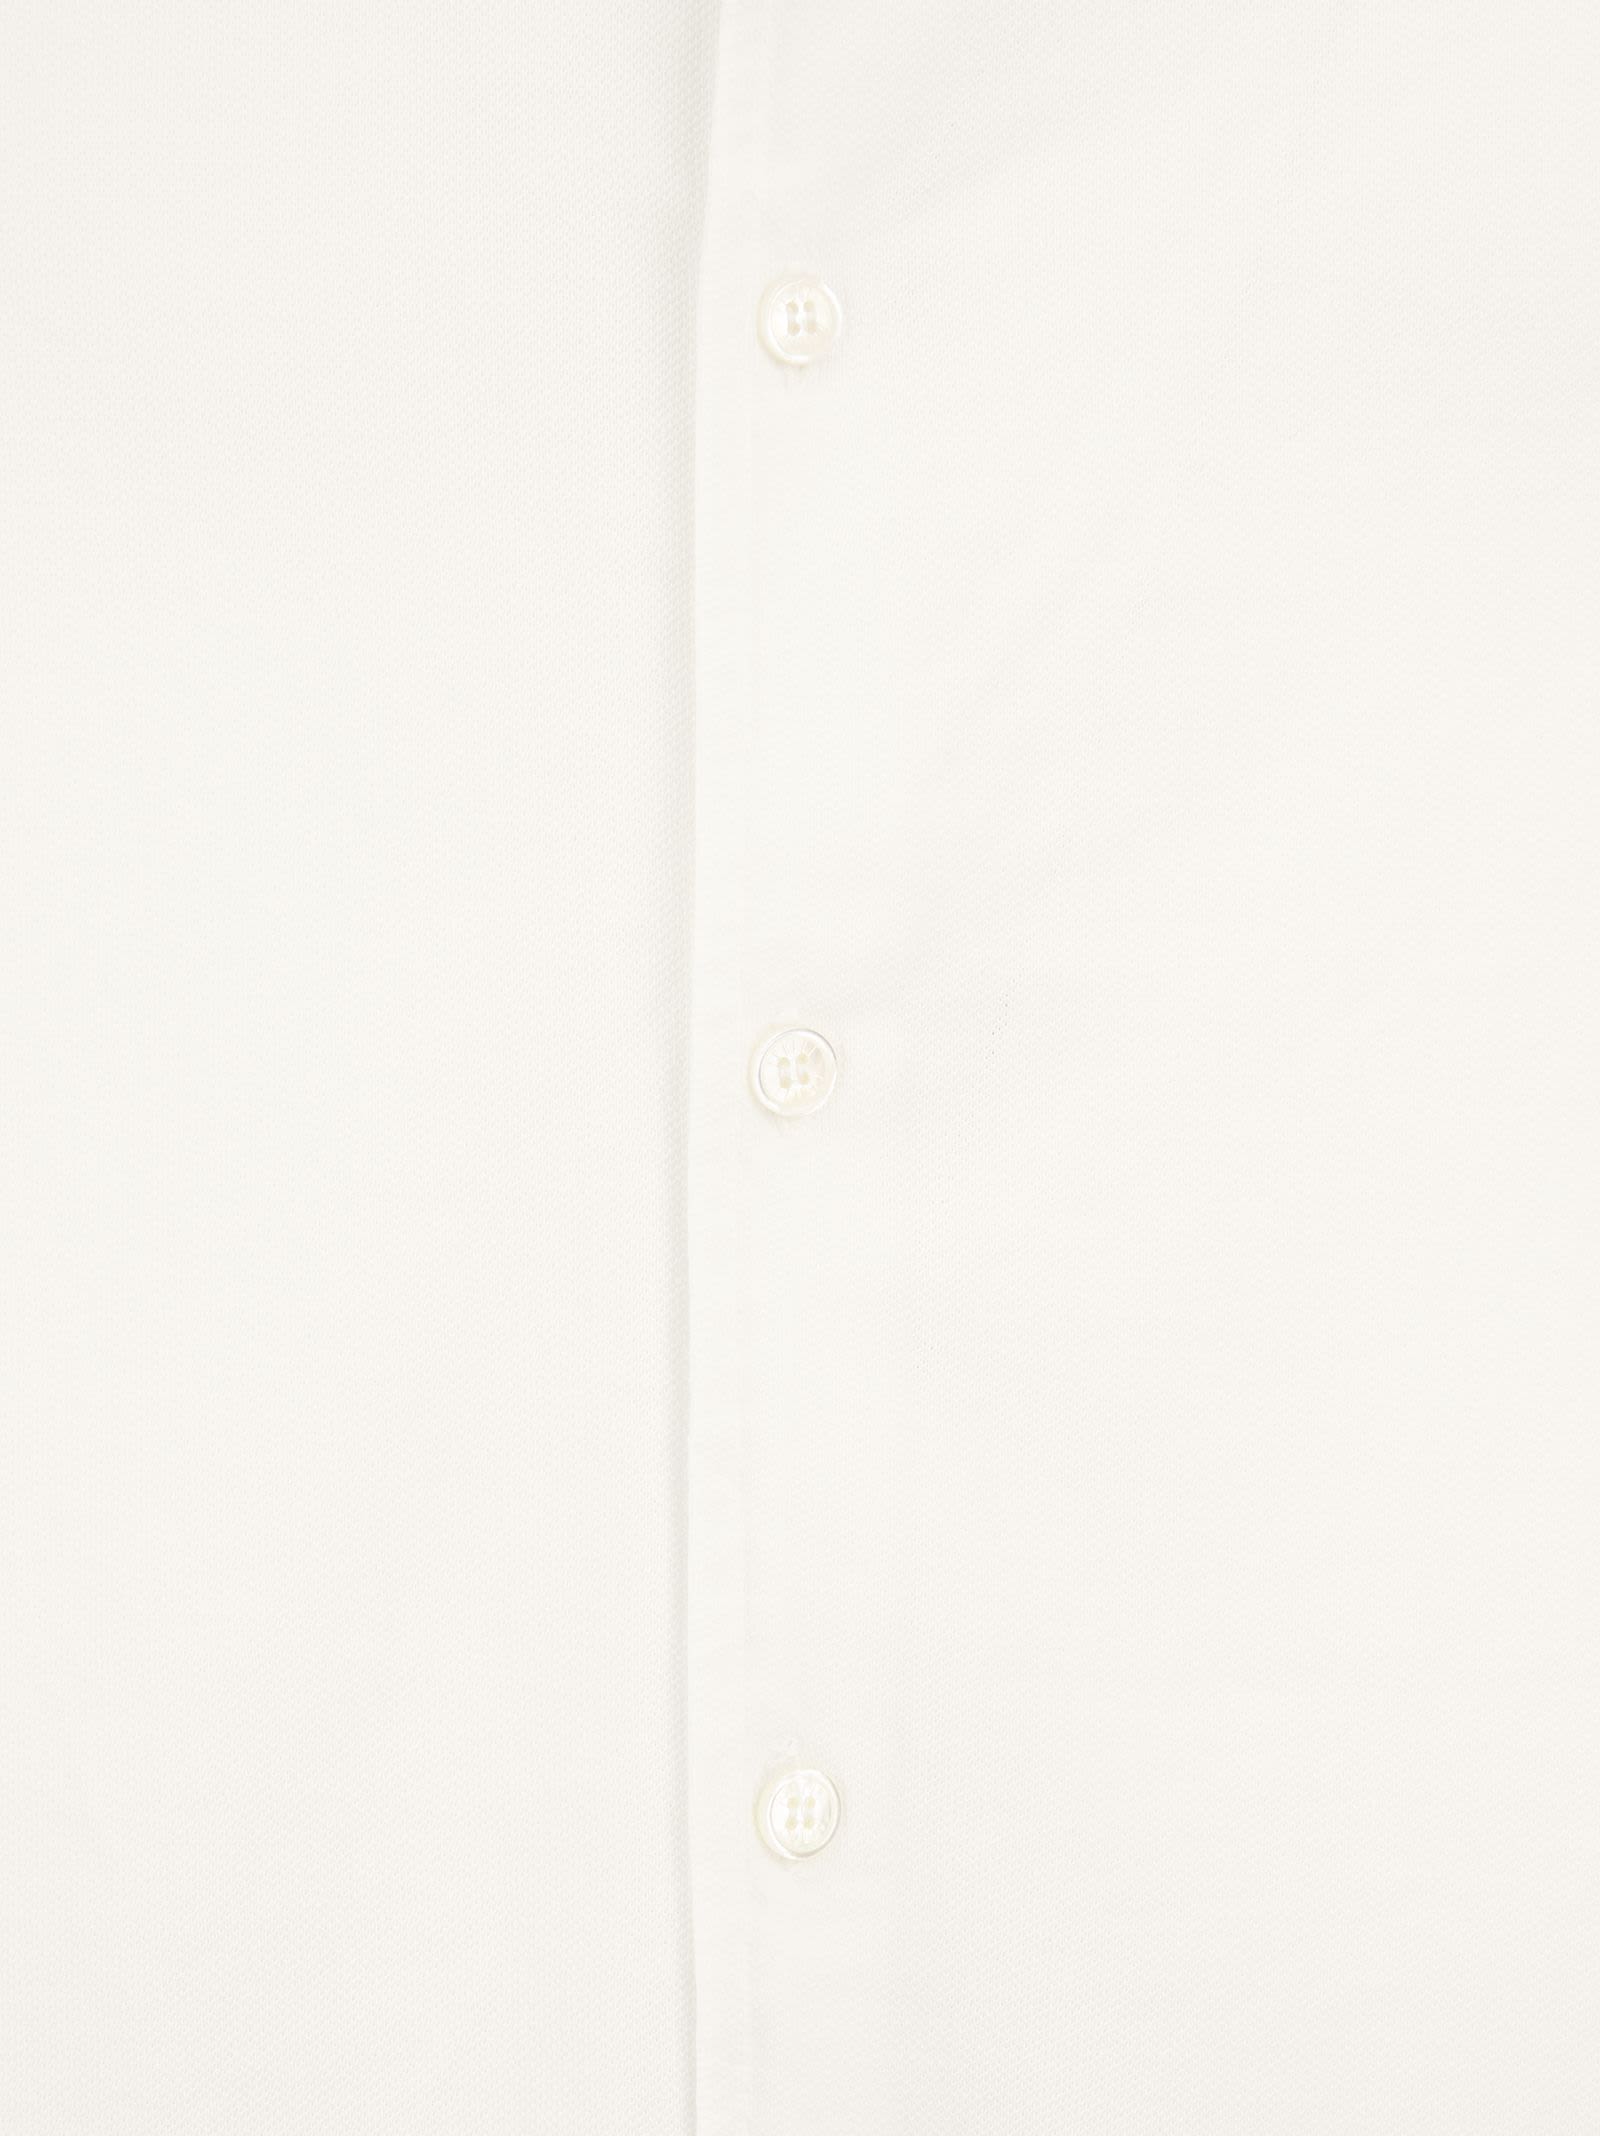 Shop Fedeli Robert - Cotton Piqué Shirt In White